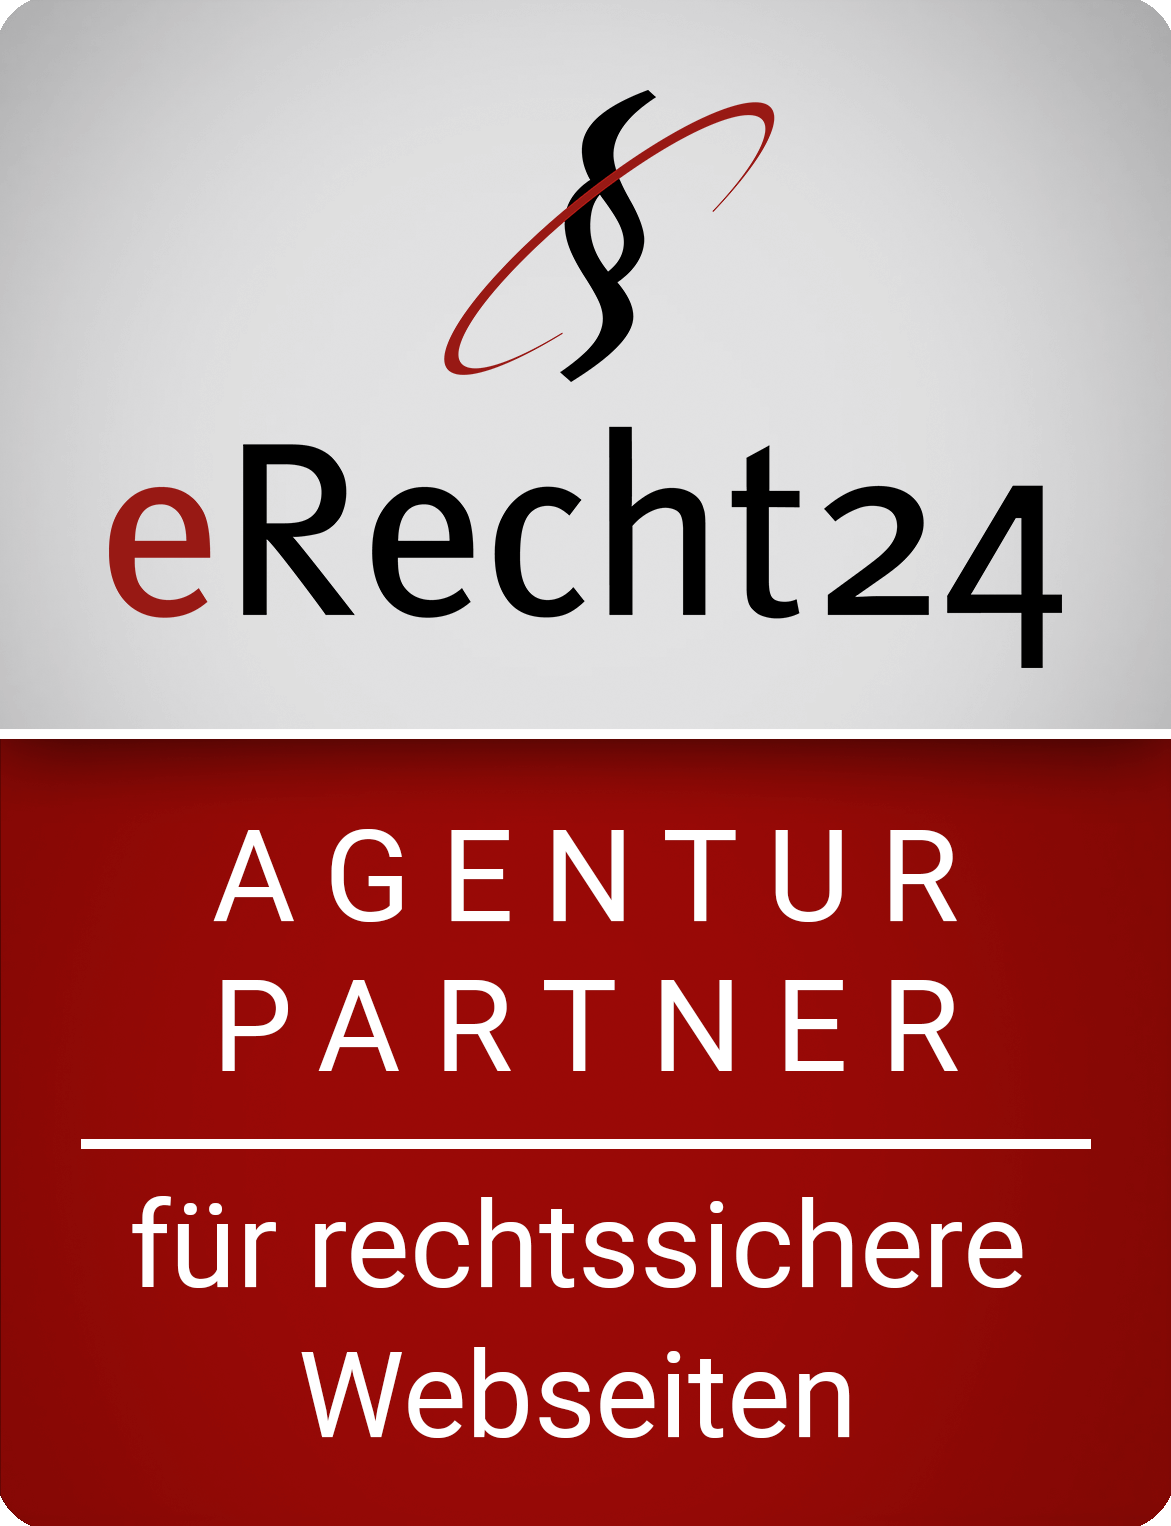 Internet-Beratung Spengler (Frankfurt) ist Partner von eRecht24